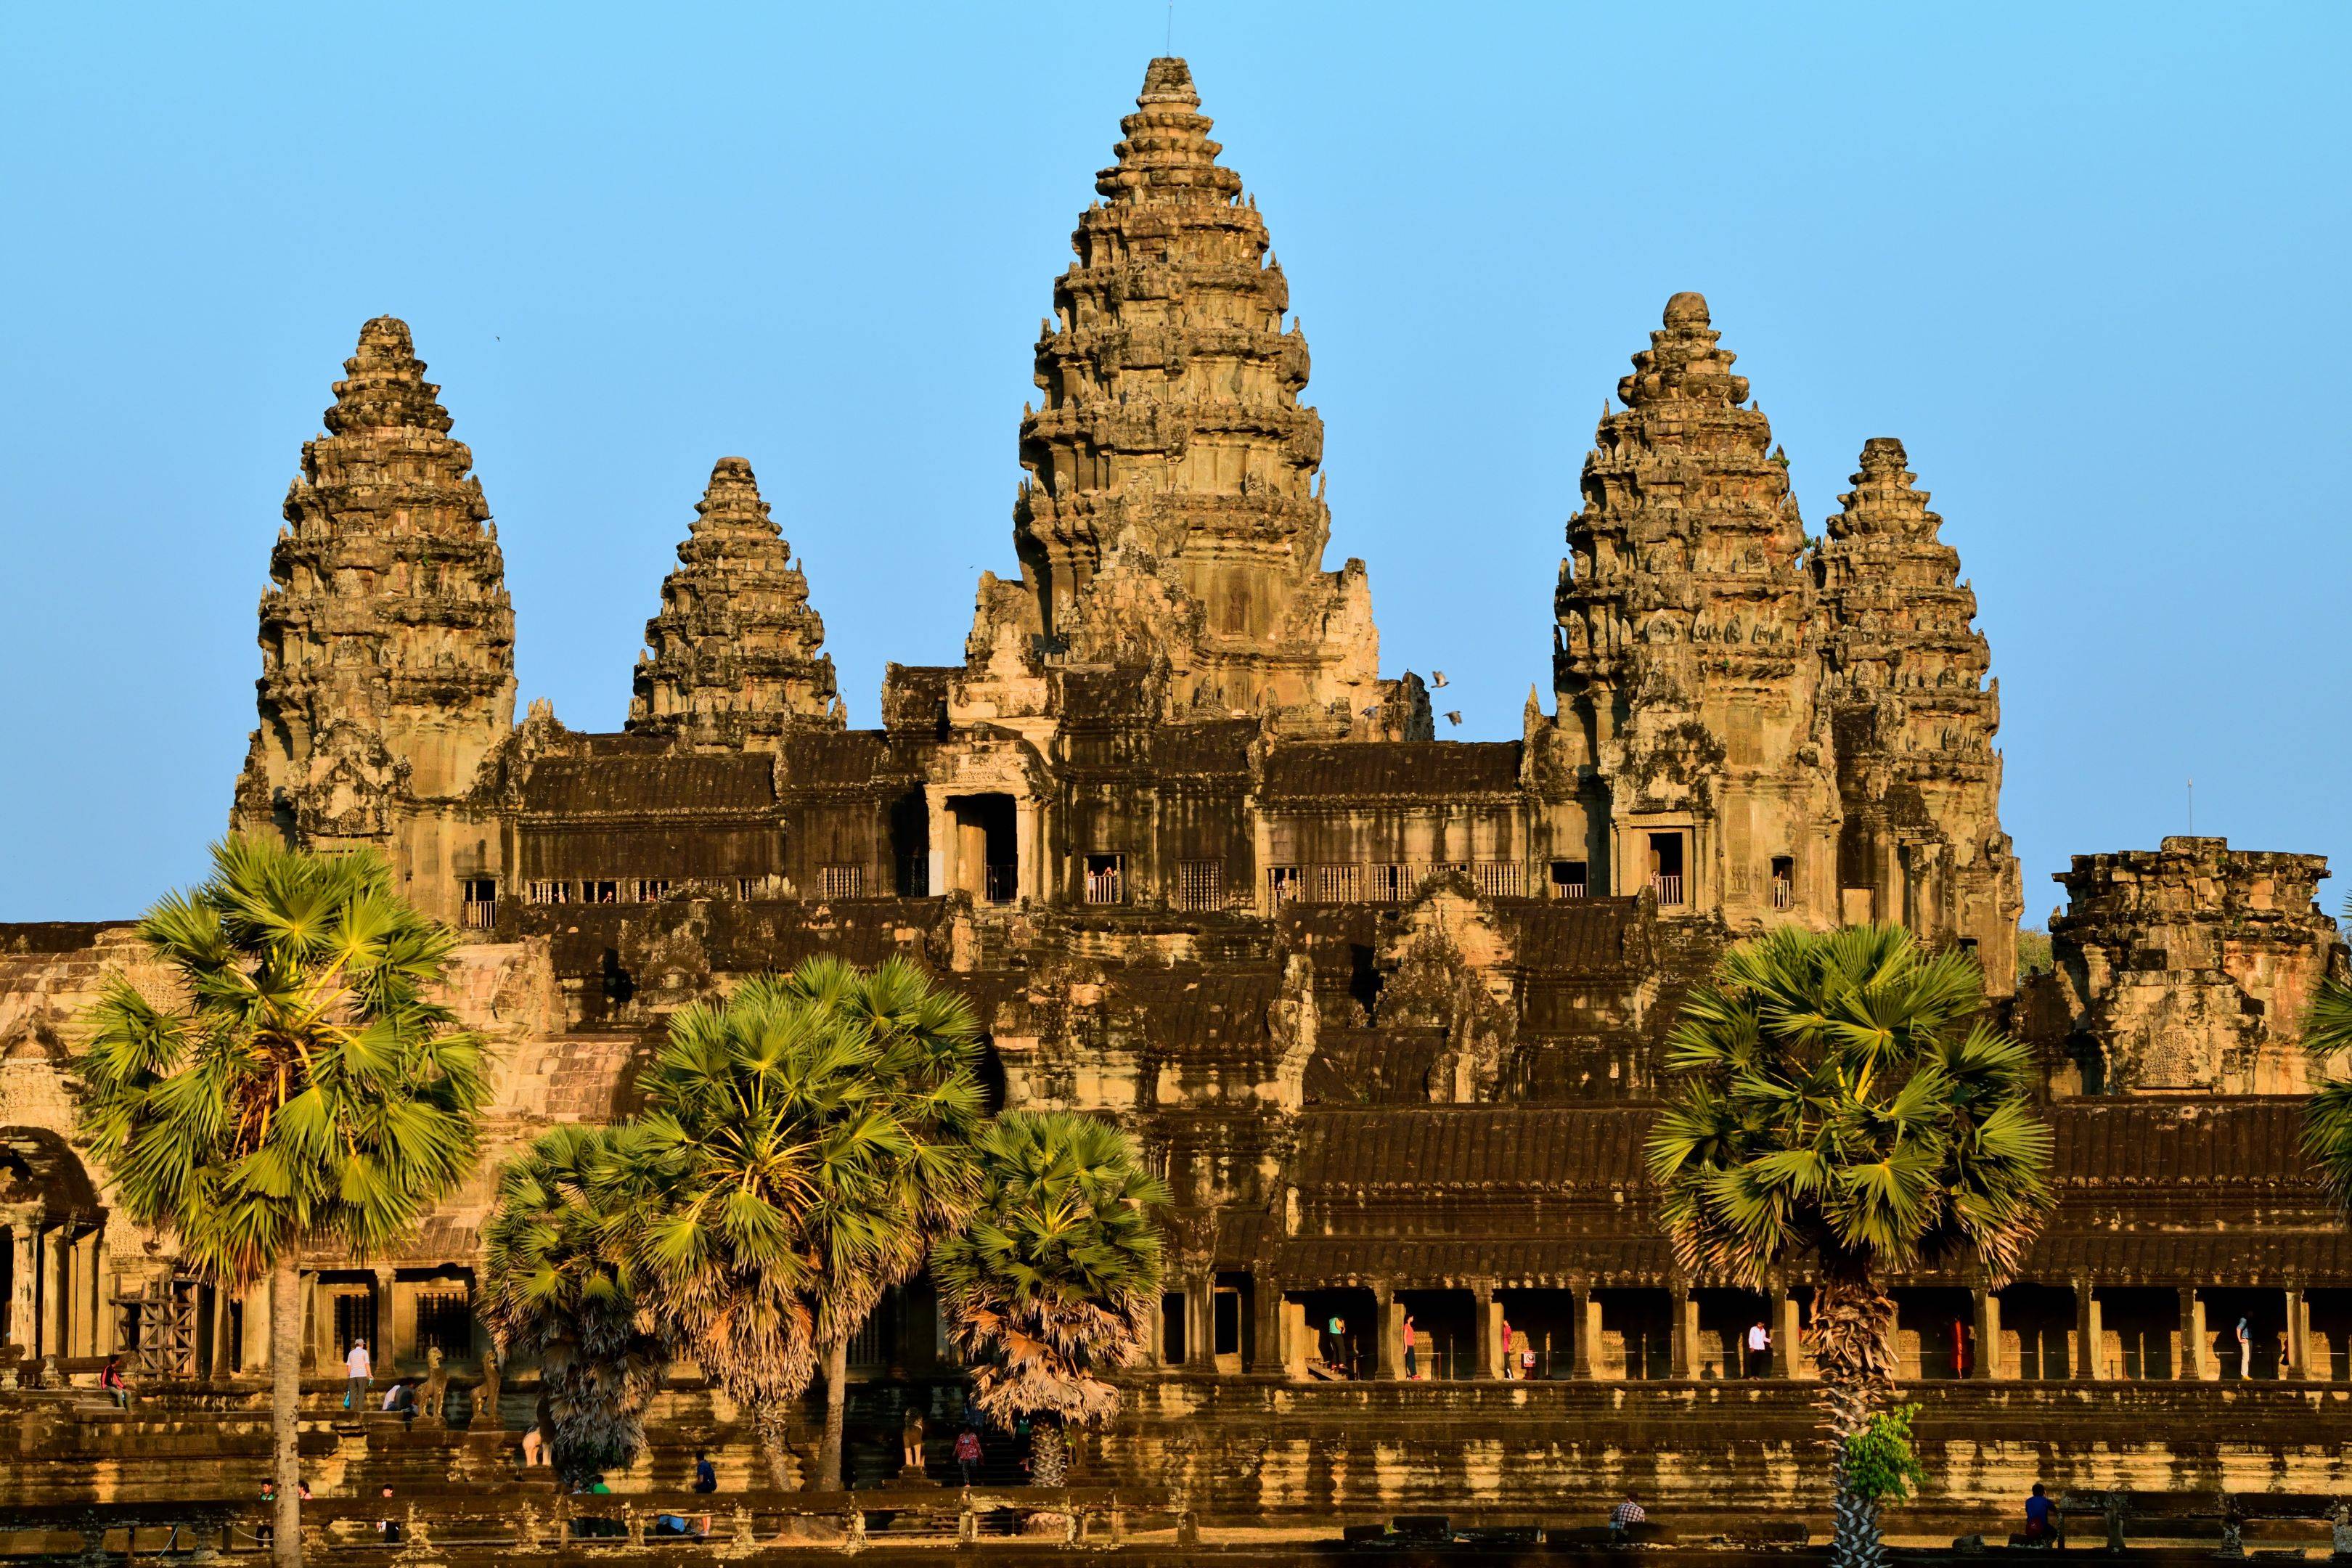 Angkor Thom & Angkor Wat 